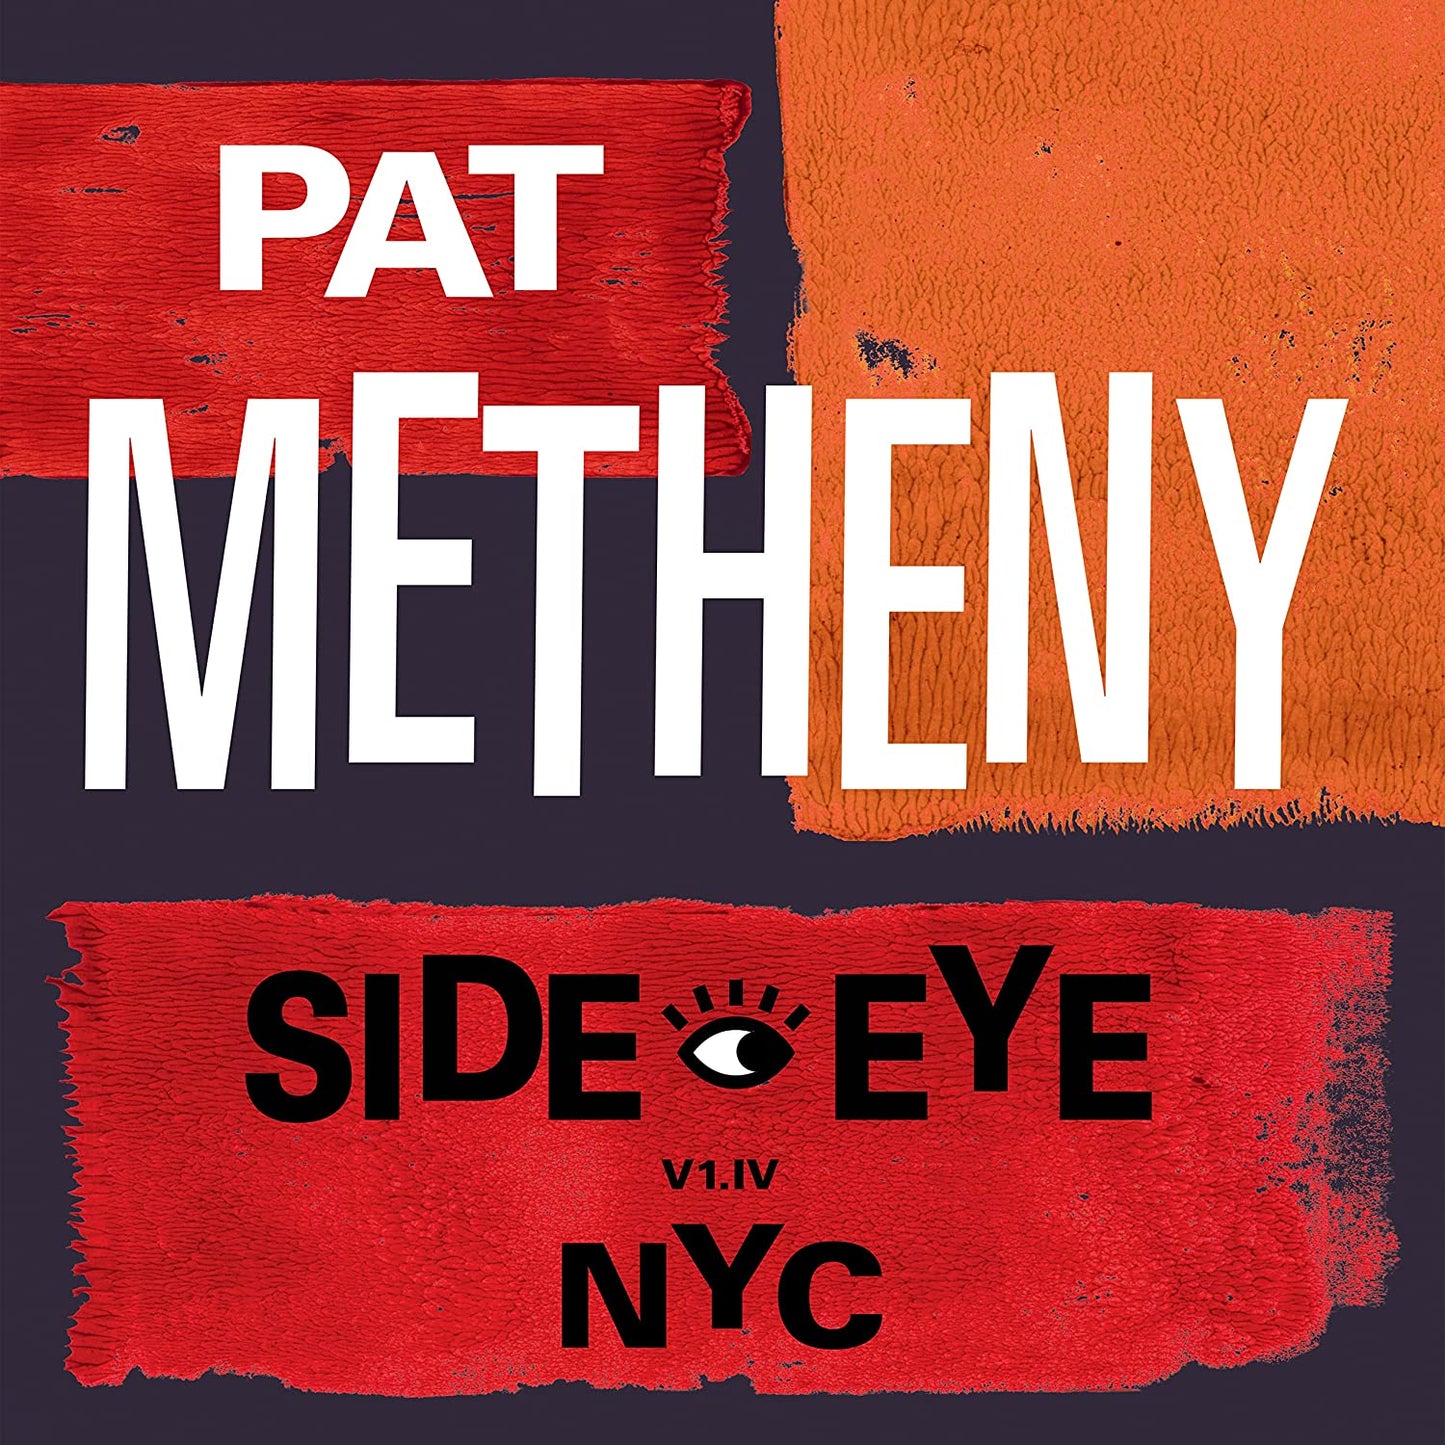 Pat Metheny - Side-Eye NYC V1.IV - CD